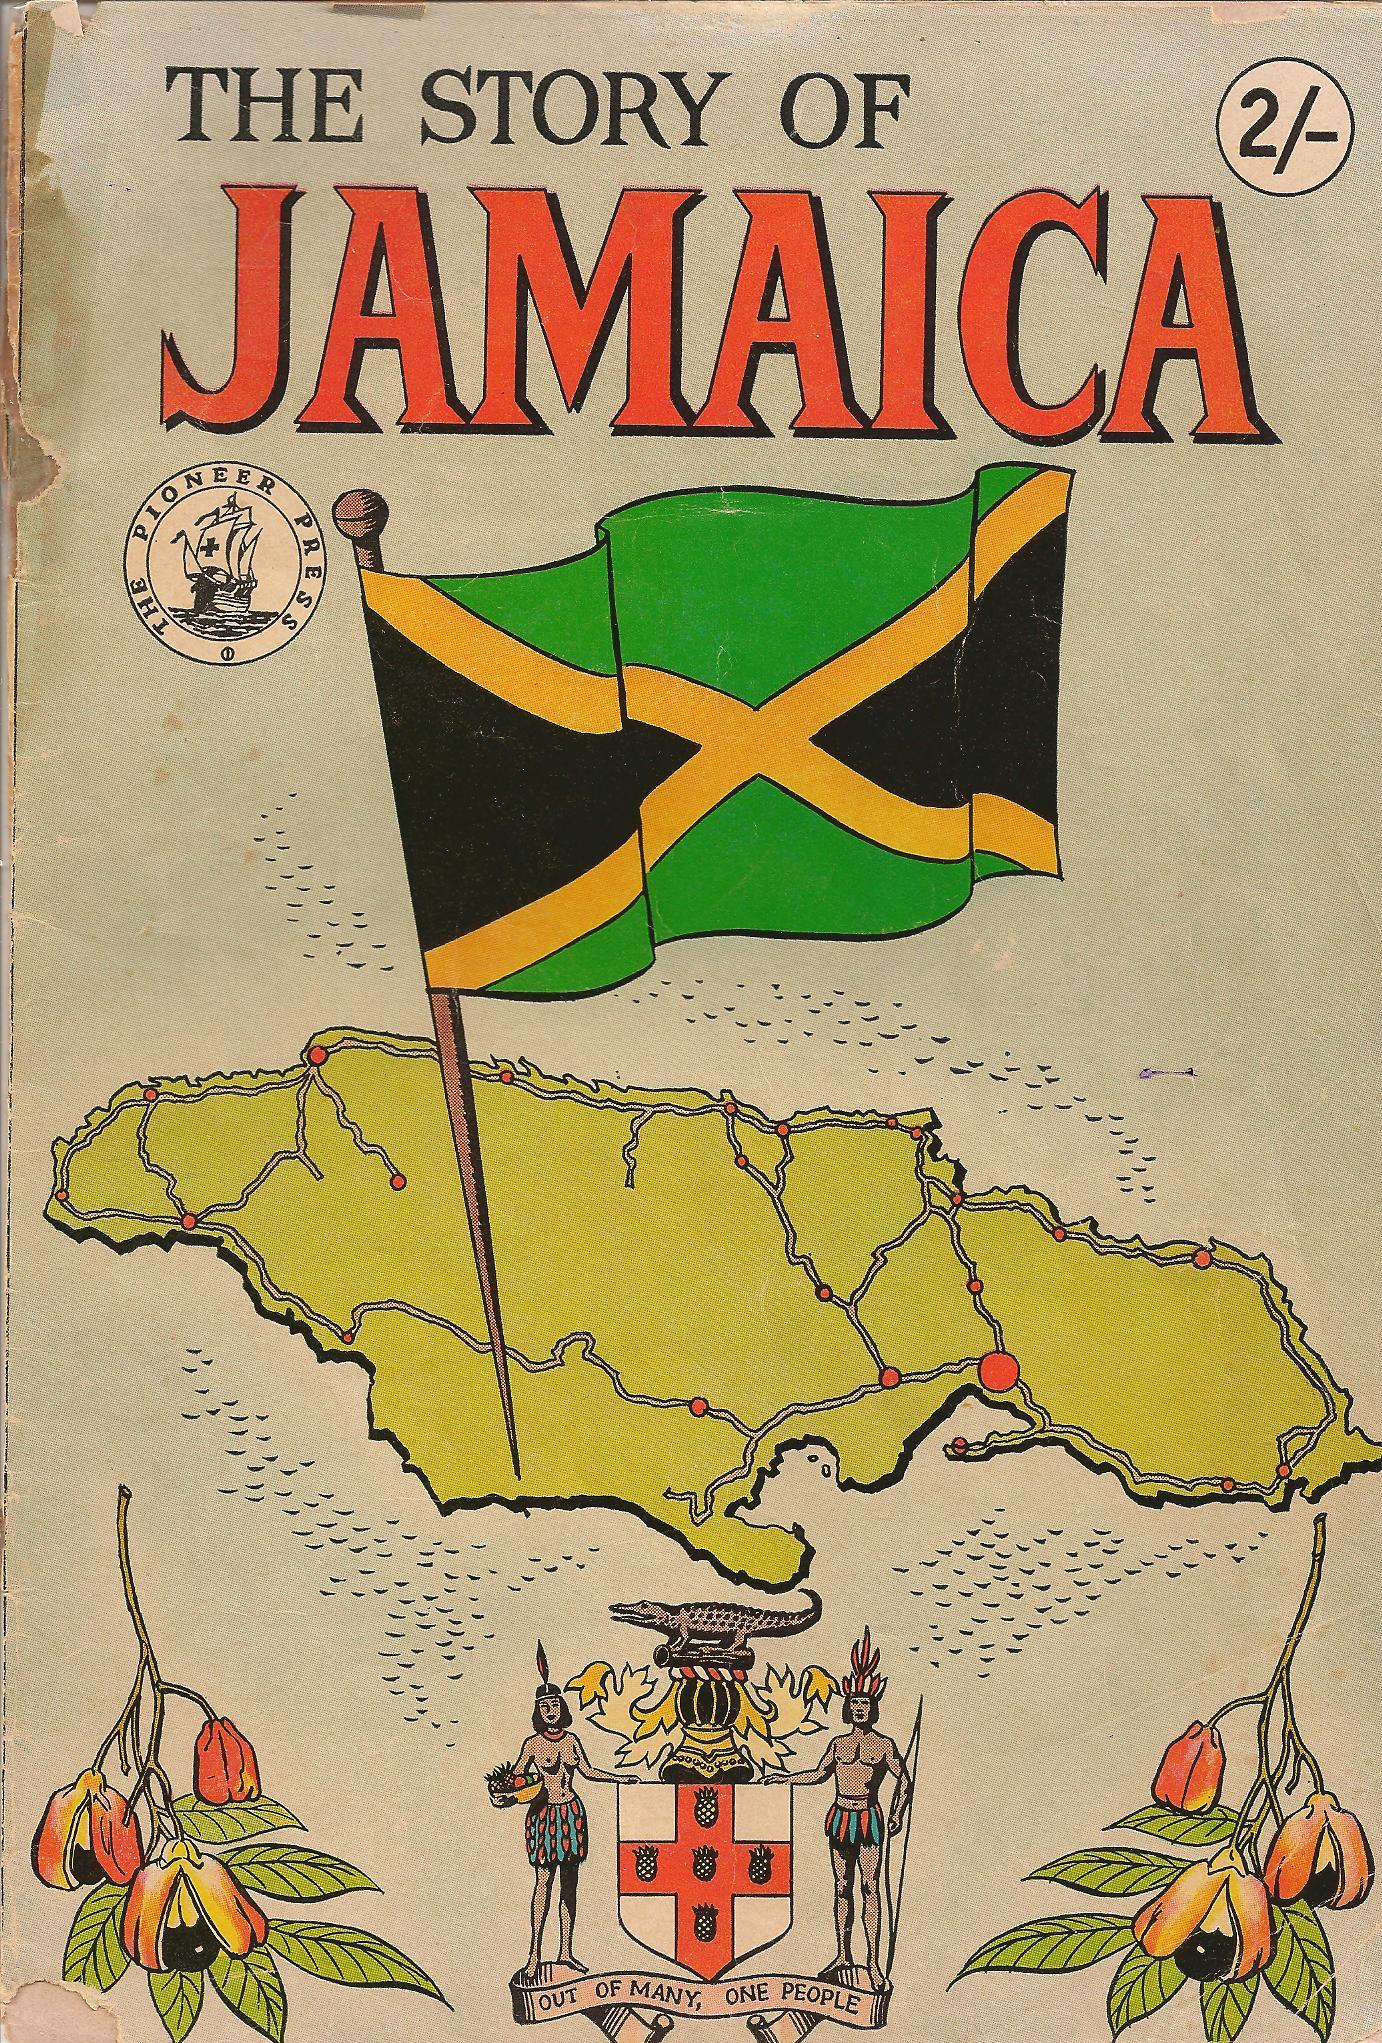 April | 2014 | Smile Jamaica